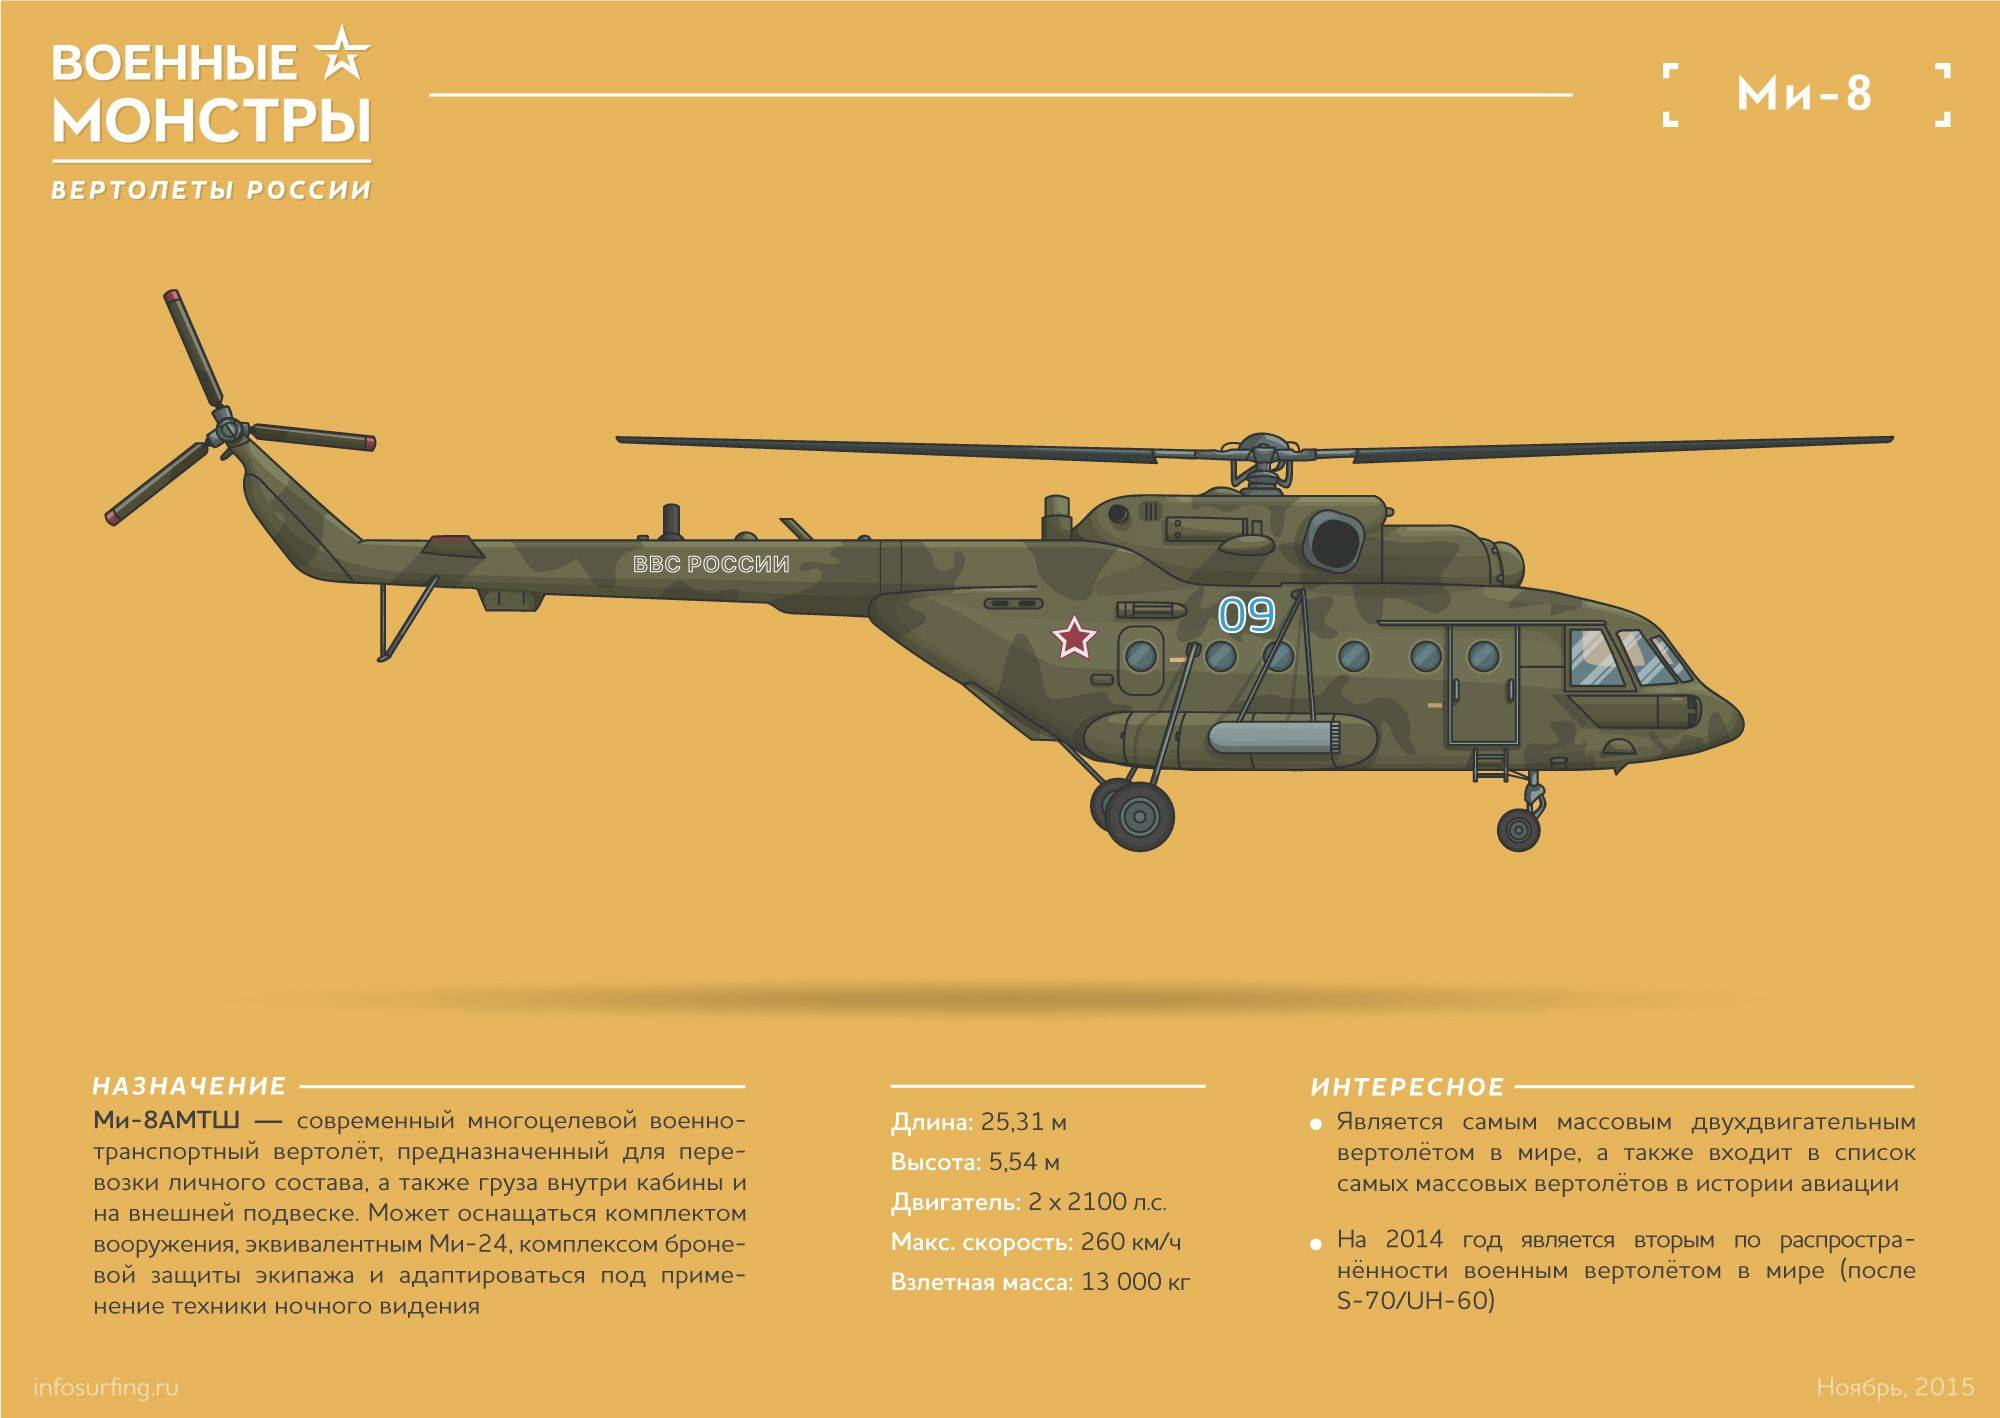 Непревзойденный гигант: на что способен самый тяжелый вертолет в мире ми-26